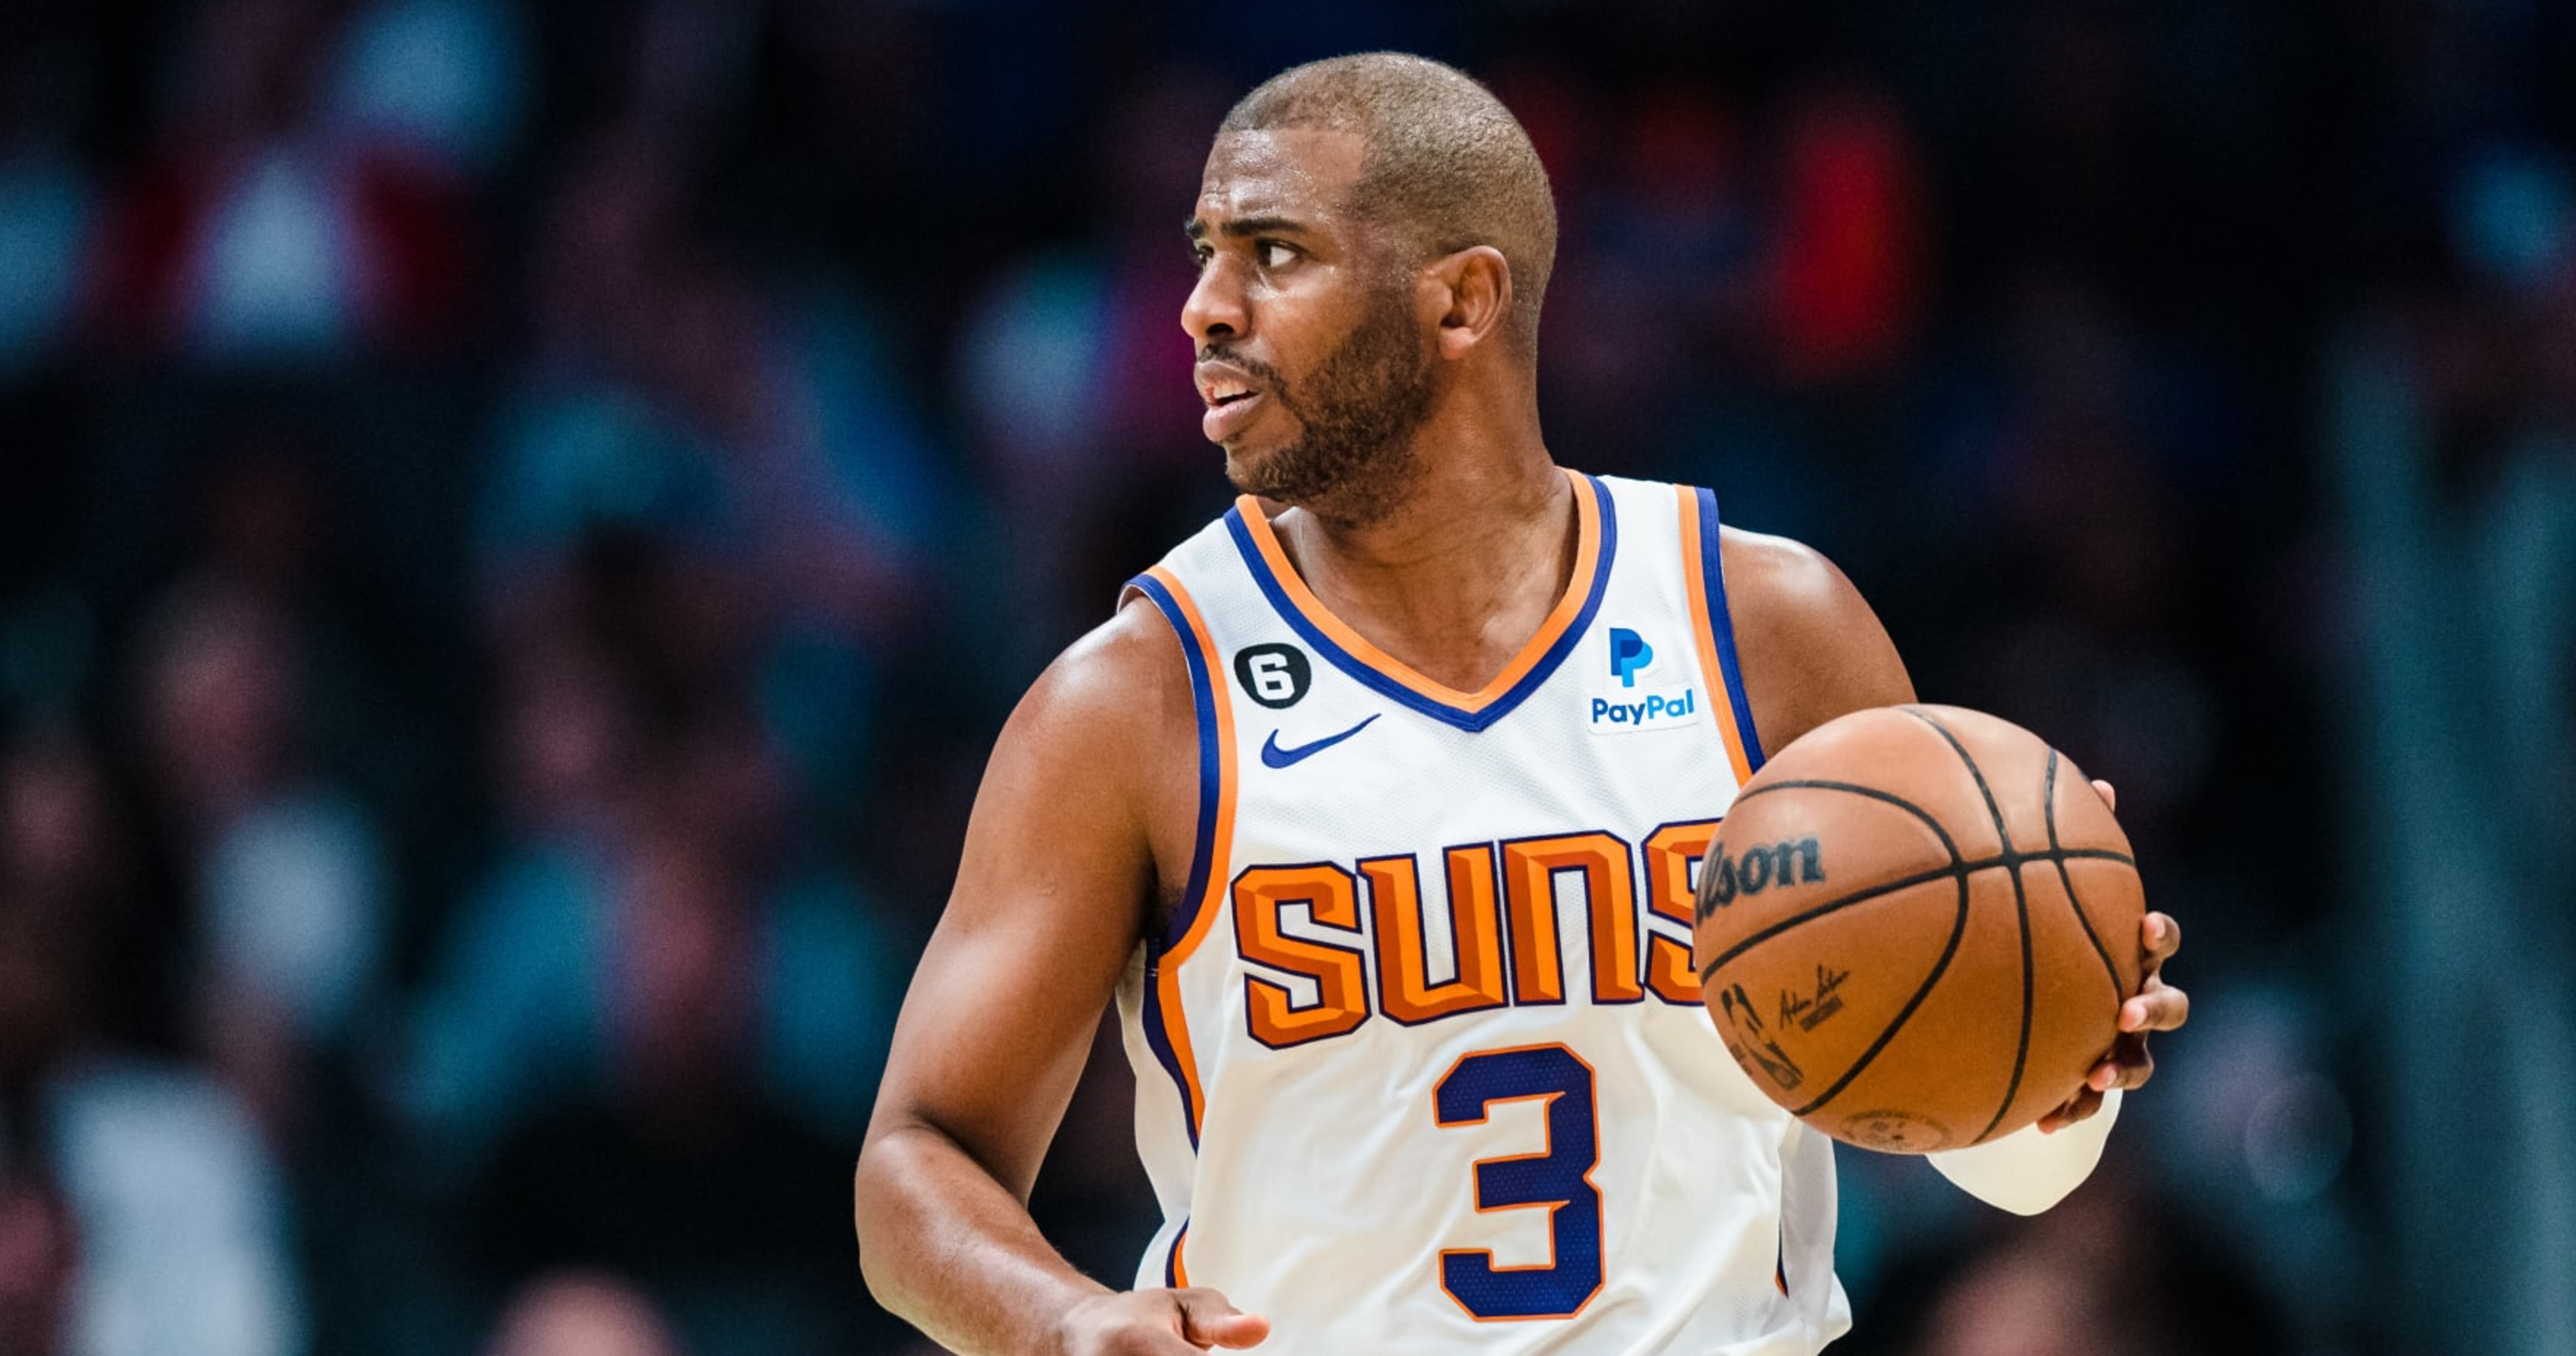 NBA, Phoenix Suns await LeBron James' free-agent decision